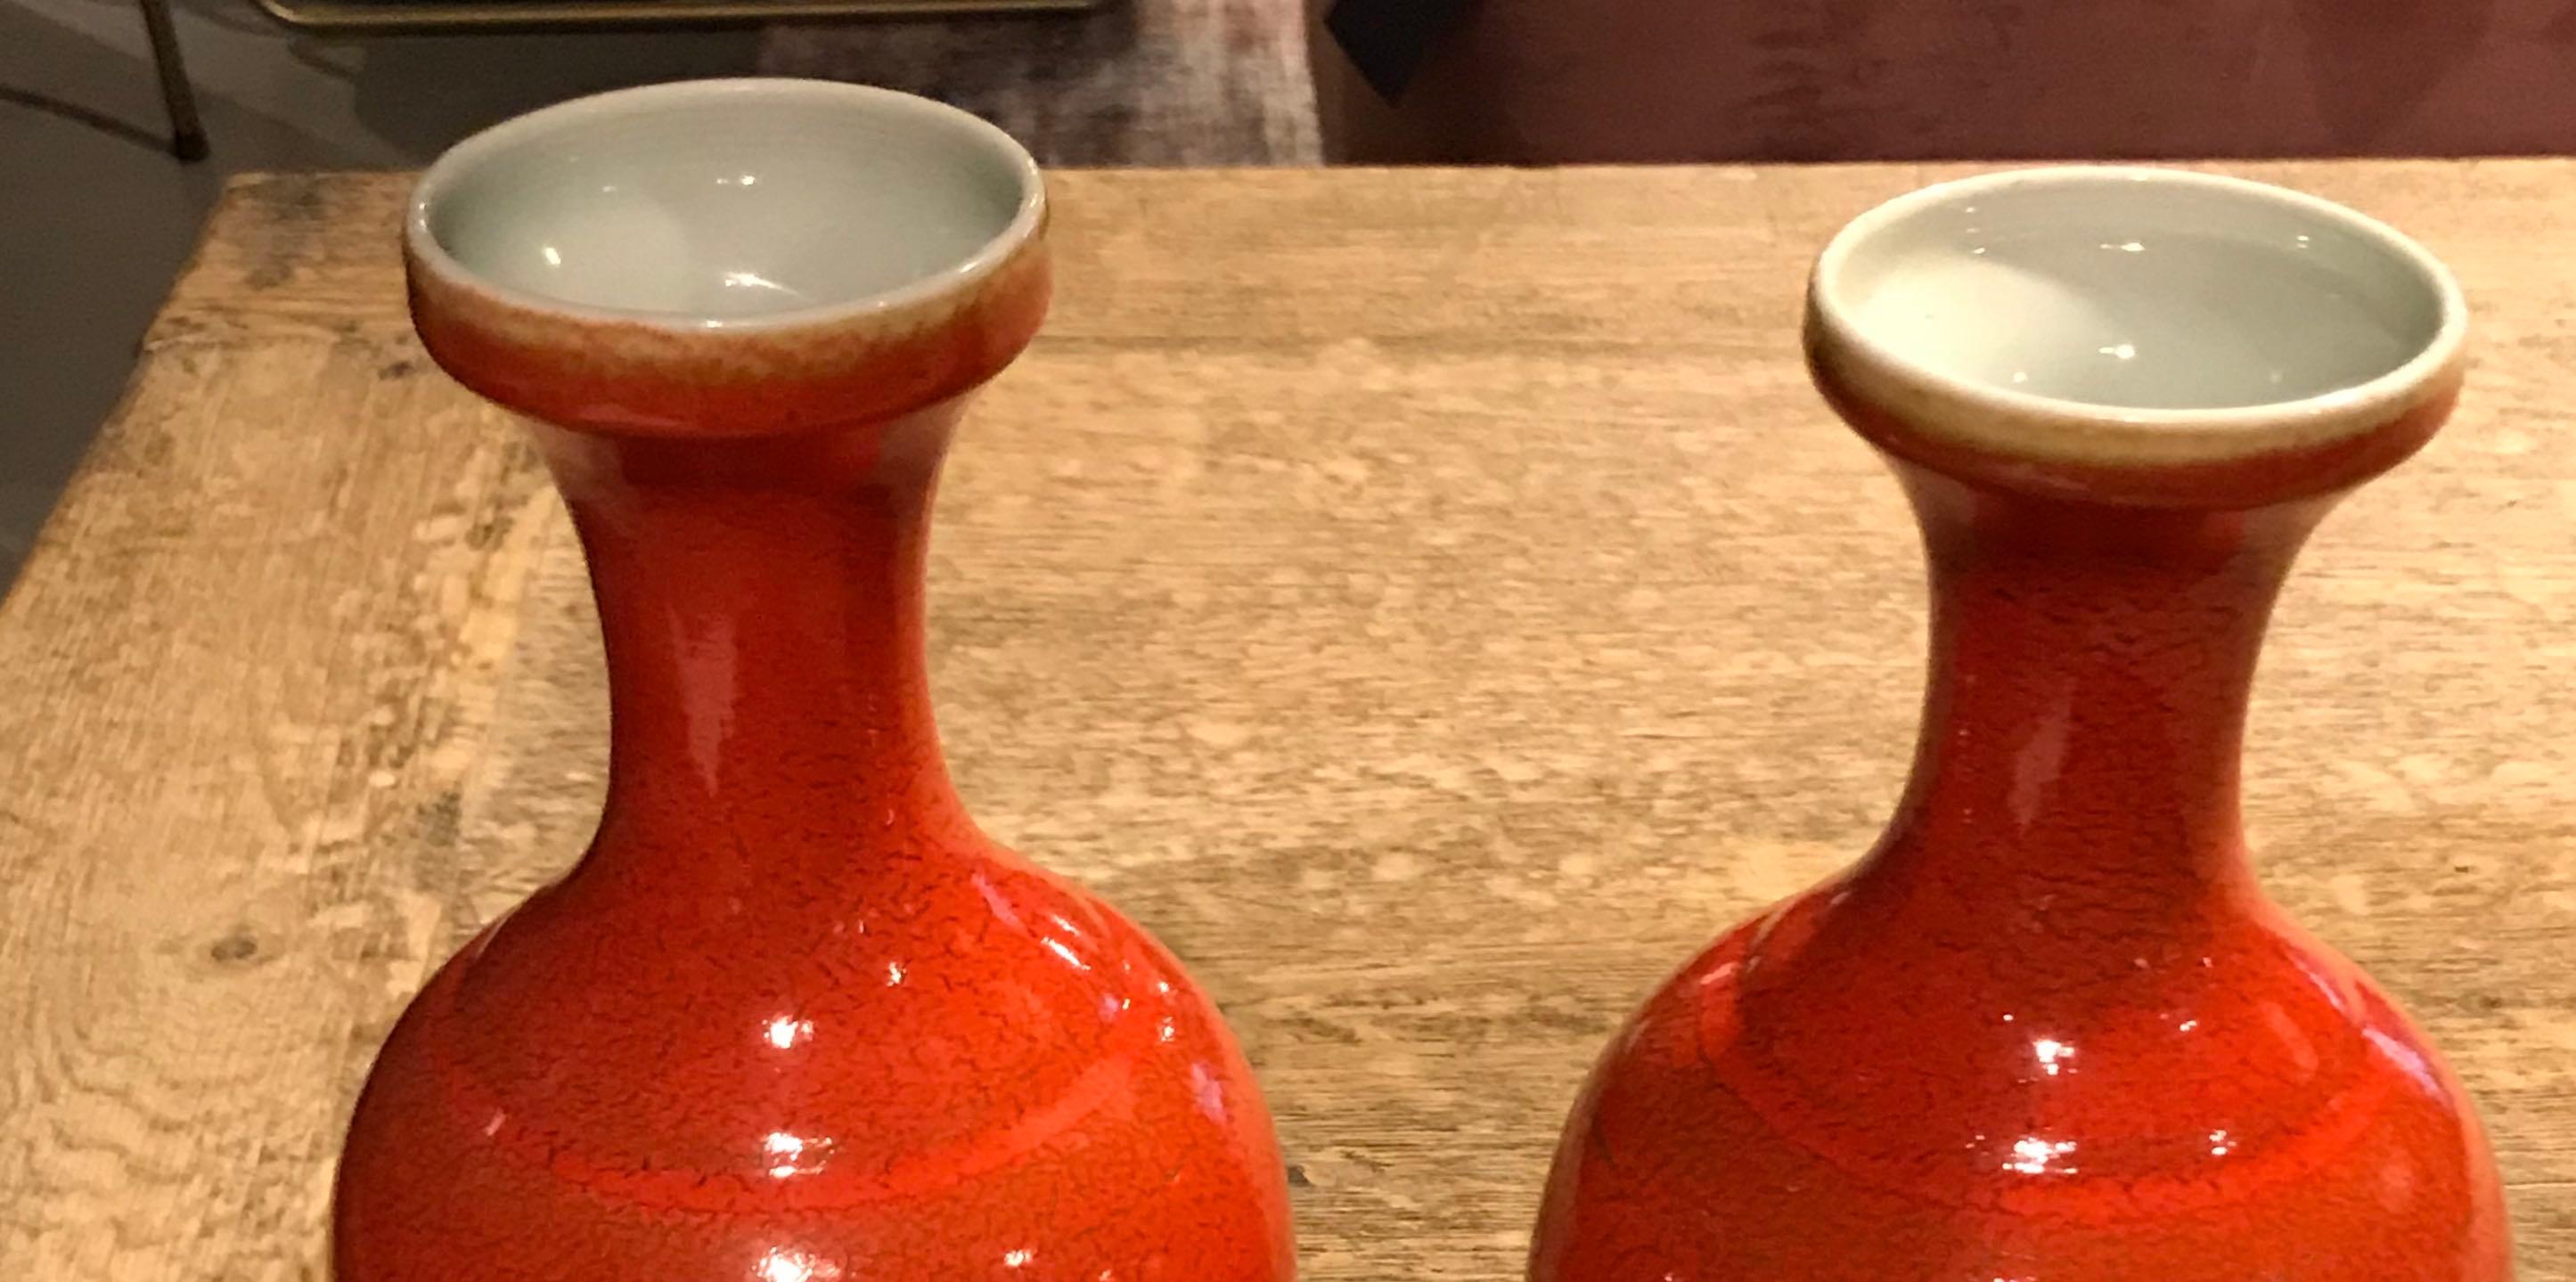 Zeitgenössische chinesische orange glasierte Porzellanvase mit dünnem Hals
Zwei sind verfügbar
Passt gut zu S5125.